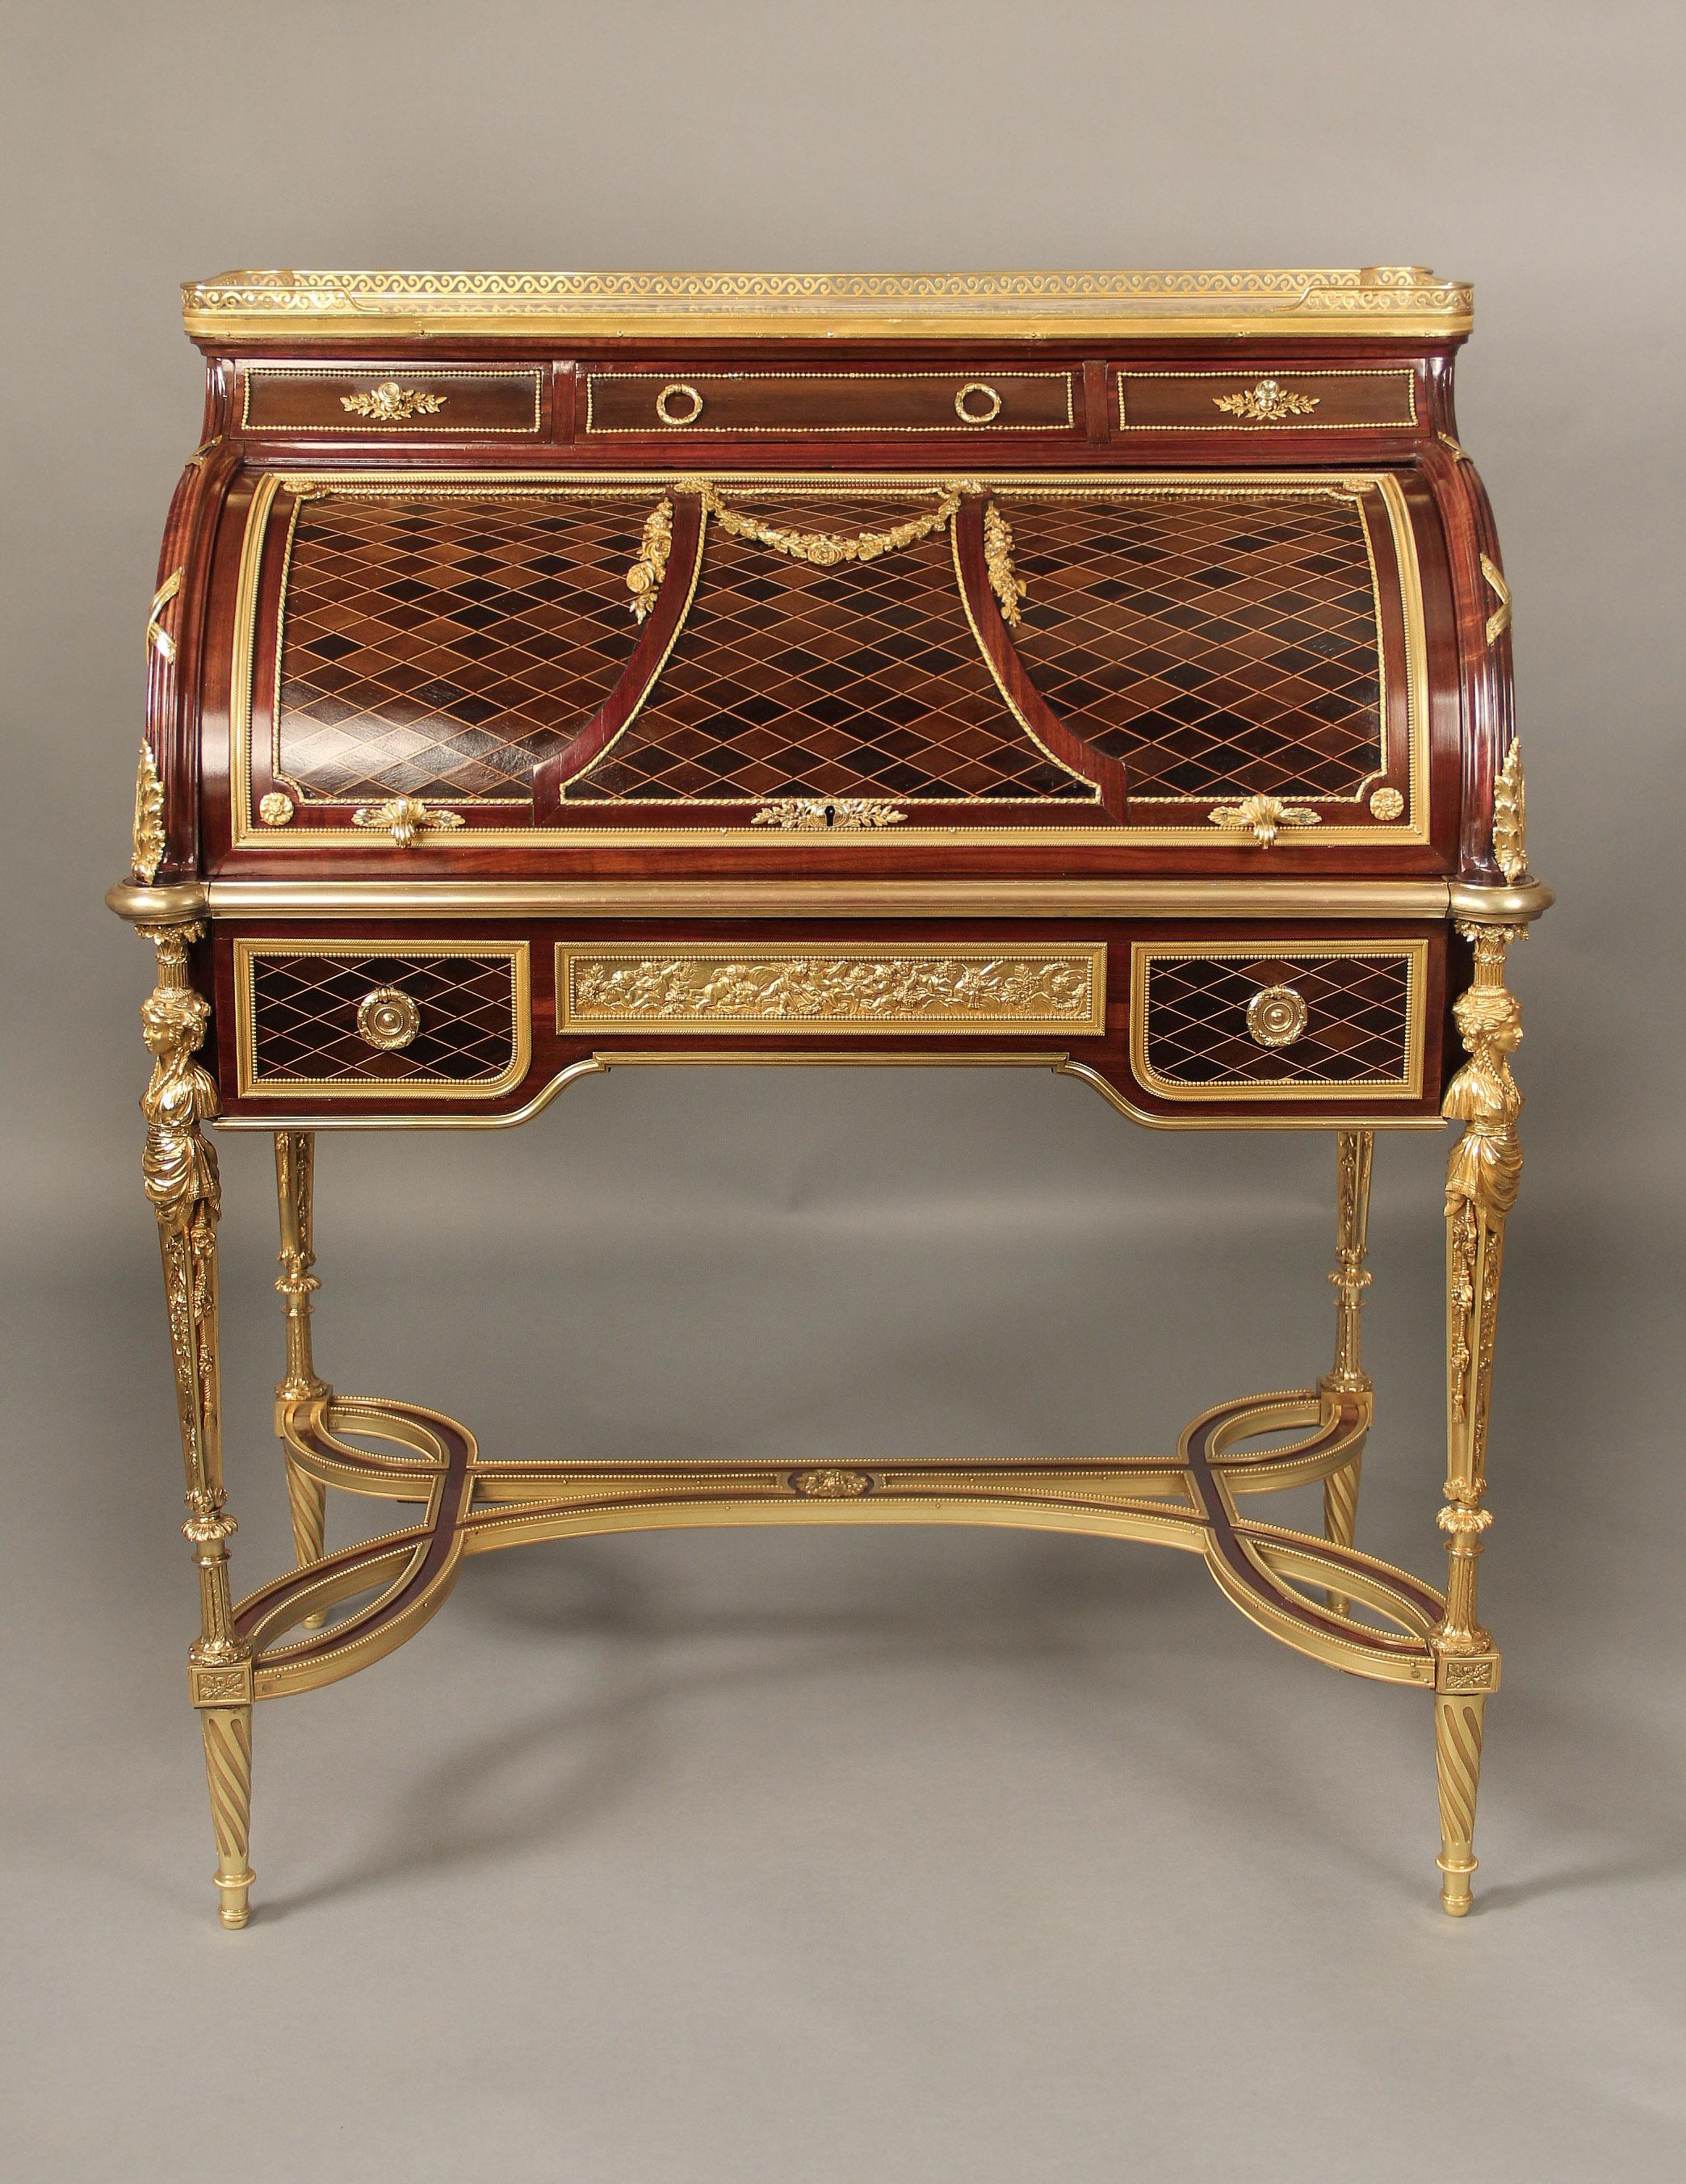 Superbe bureau à cylindre de style Louis XVI, datant de la fin du 19e siècle, monté en bronze doré. Peut-être François Linke pour la Maison Krieger

A la manière d'Adam Weisweiler

Cajou, marqueterie de platane, cordons d'ébène et de buis, le